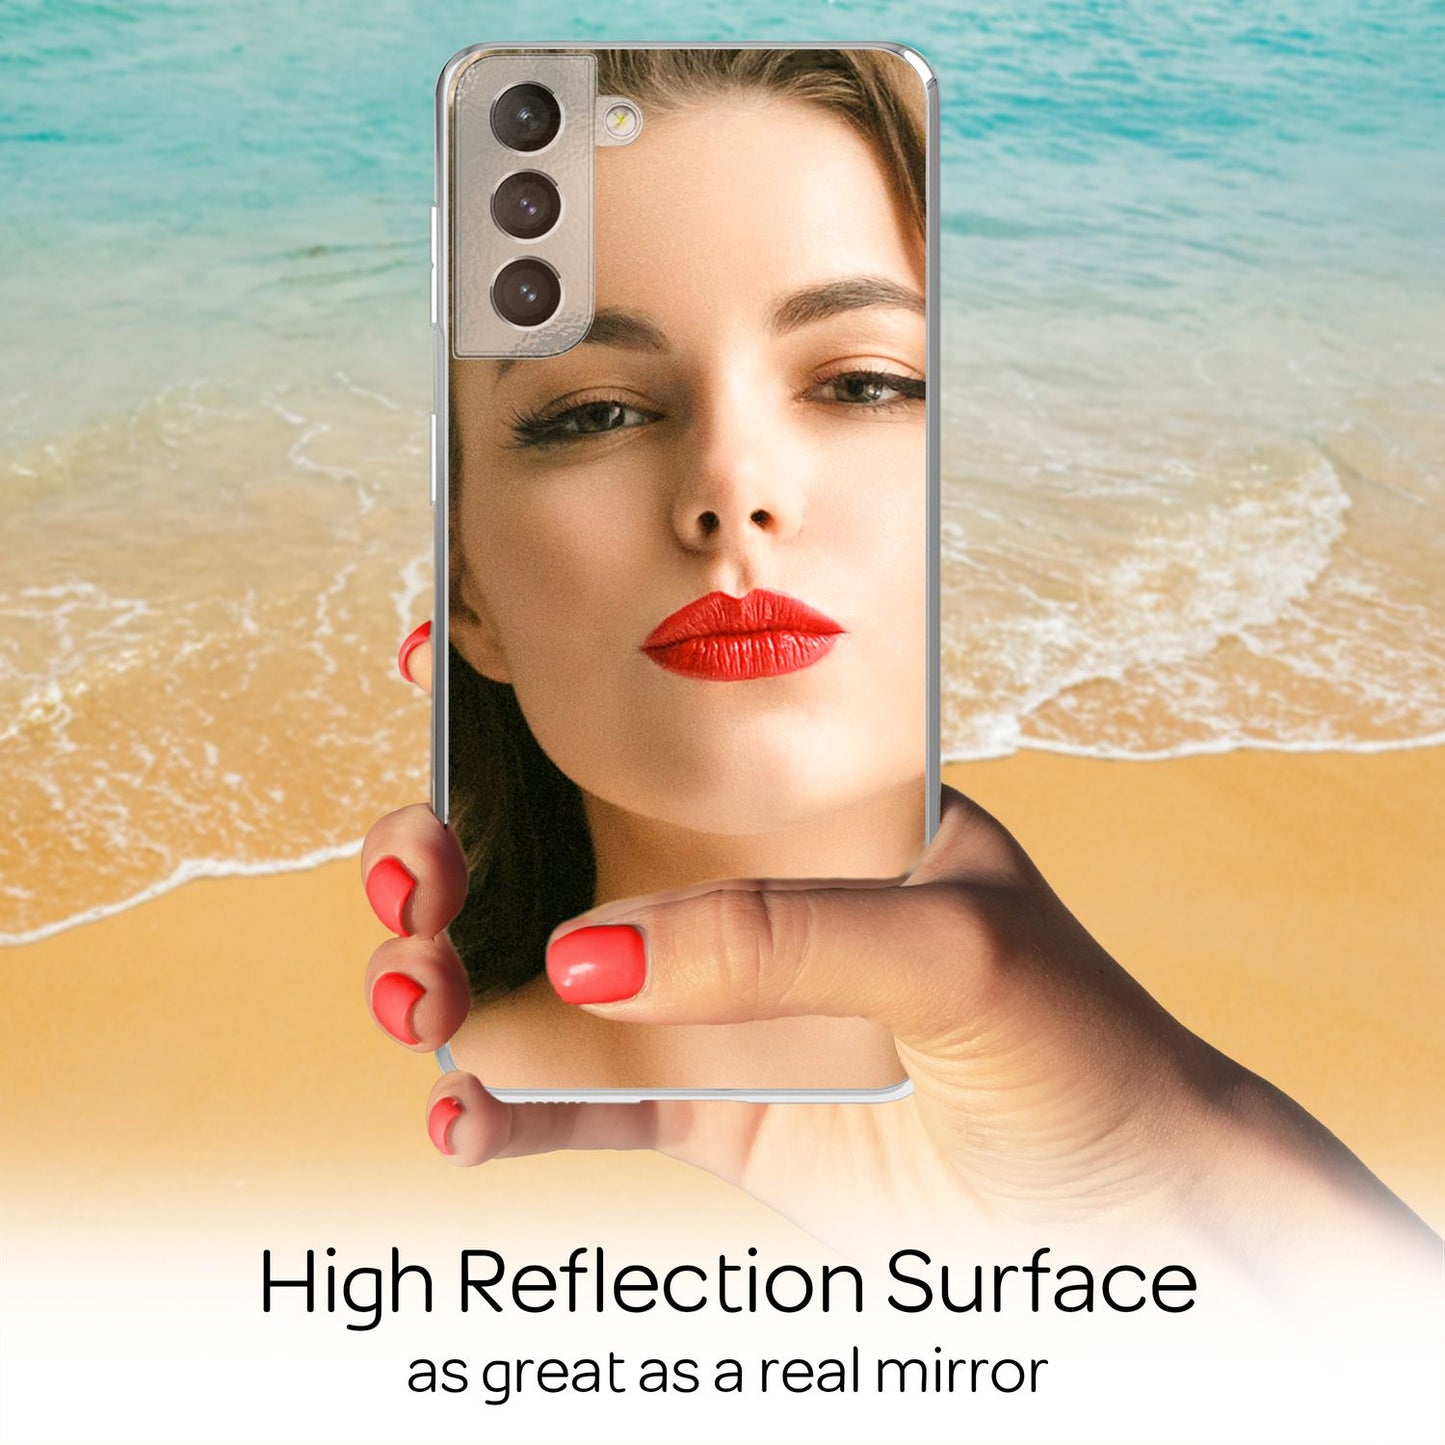 NALIA für Samsung Galaxy S22 Plus - Spiegel Handy Hülle Glas Cover Mirror Case